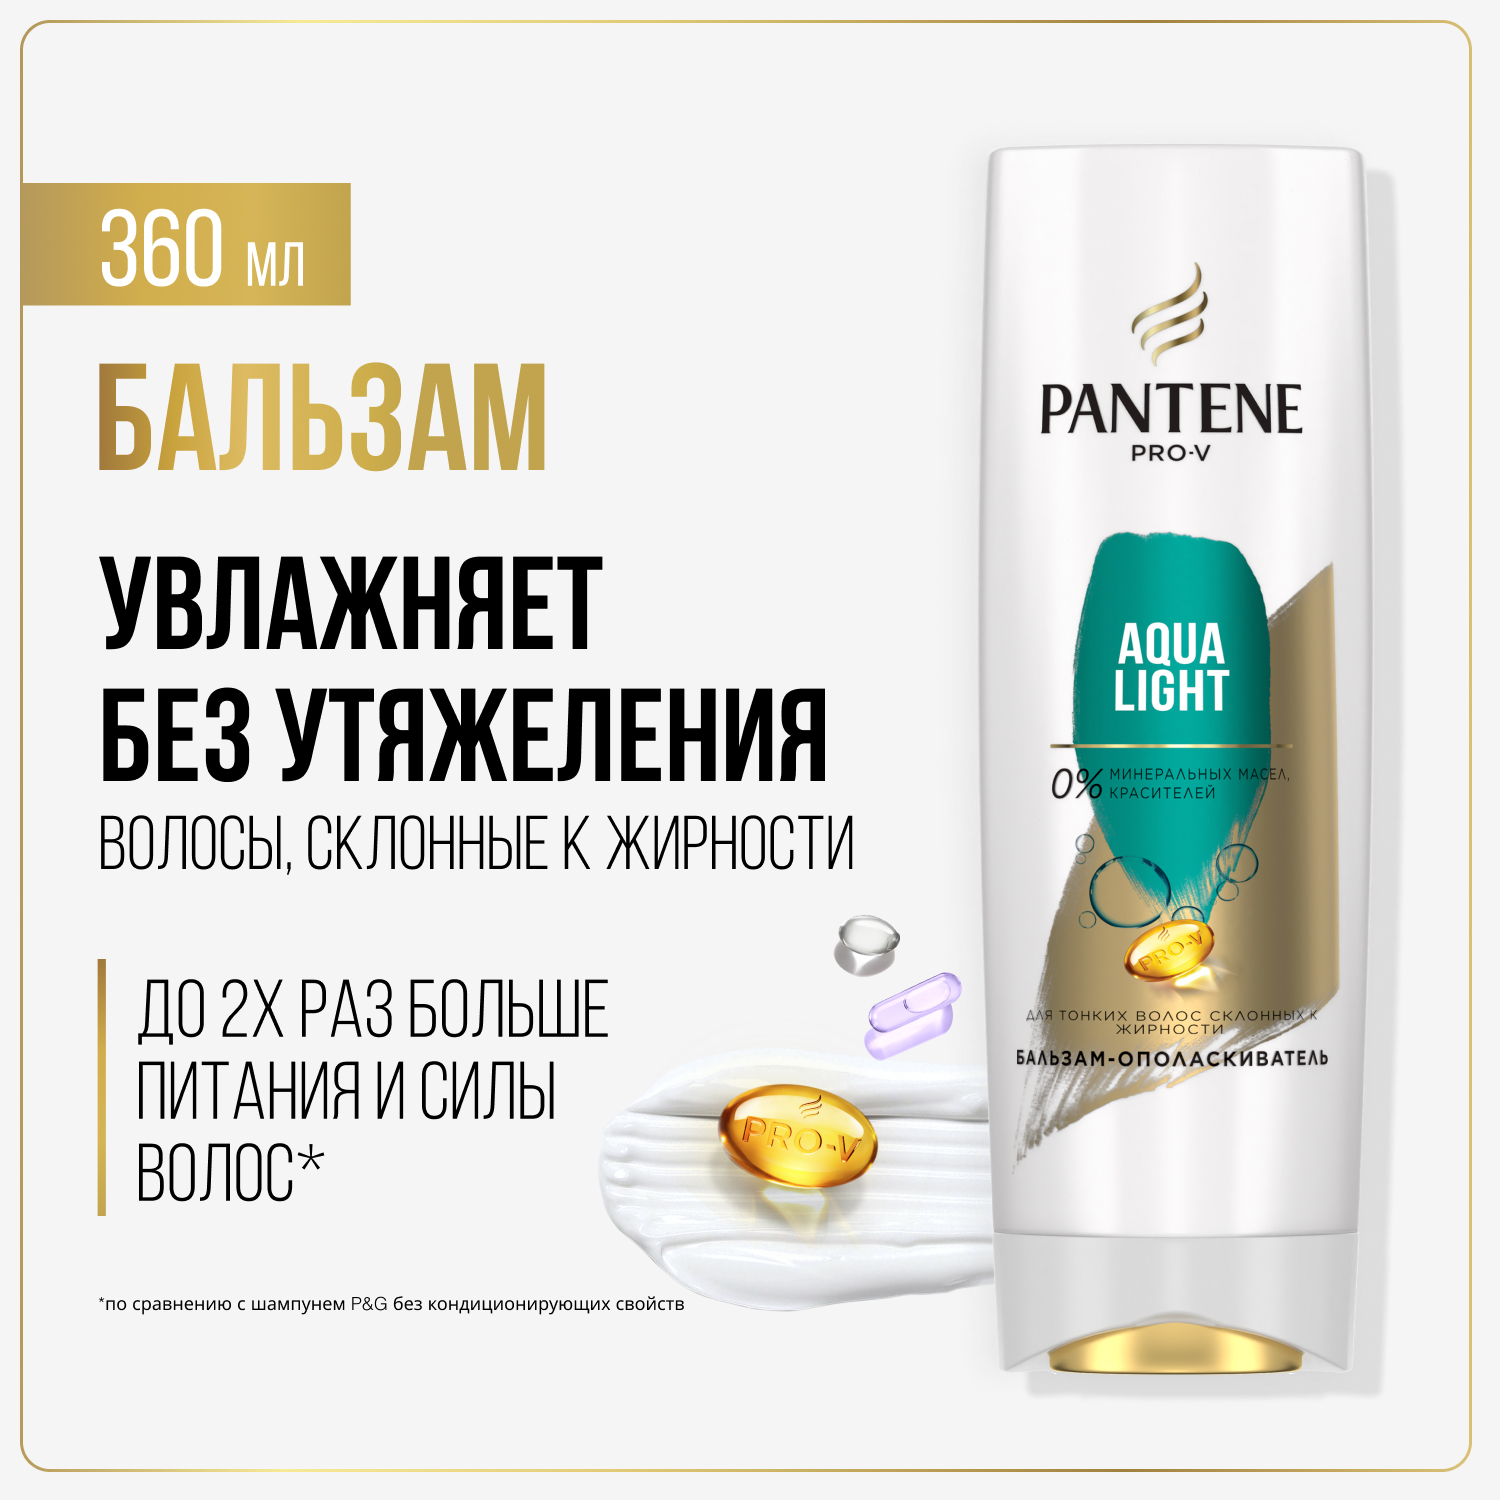 Бальзам для волос Pantene Aqua Light легкий, питательный и укрепляющий, 360 мл floland укрепляющий бальзам 3 в 1 с биотином и экстрактом чайного дерева scalp intensive treatment 120